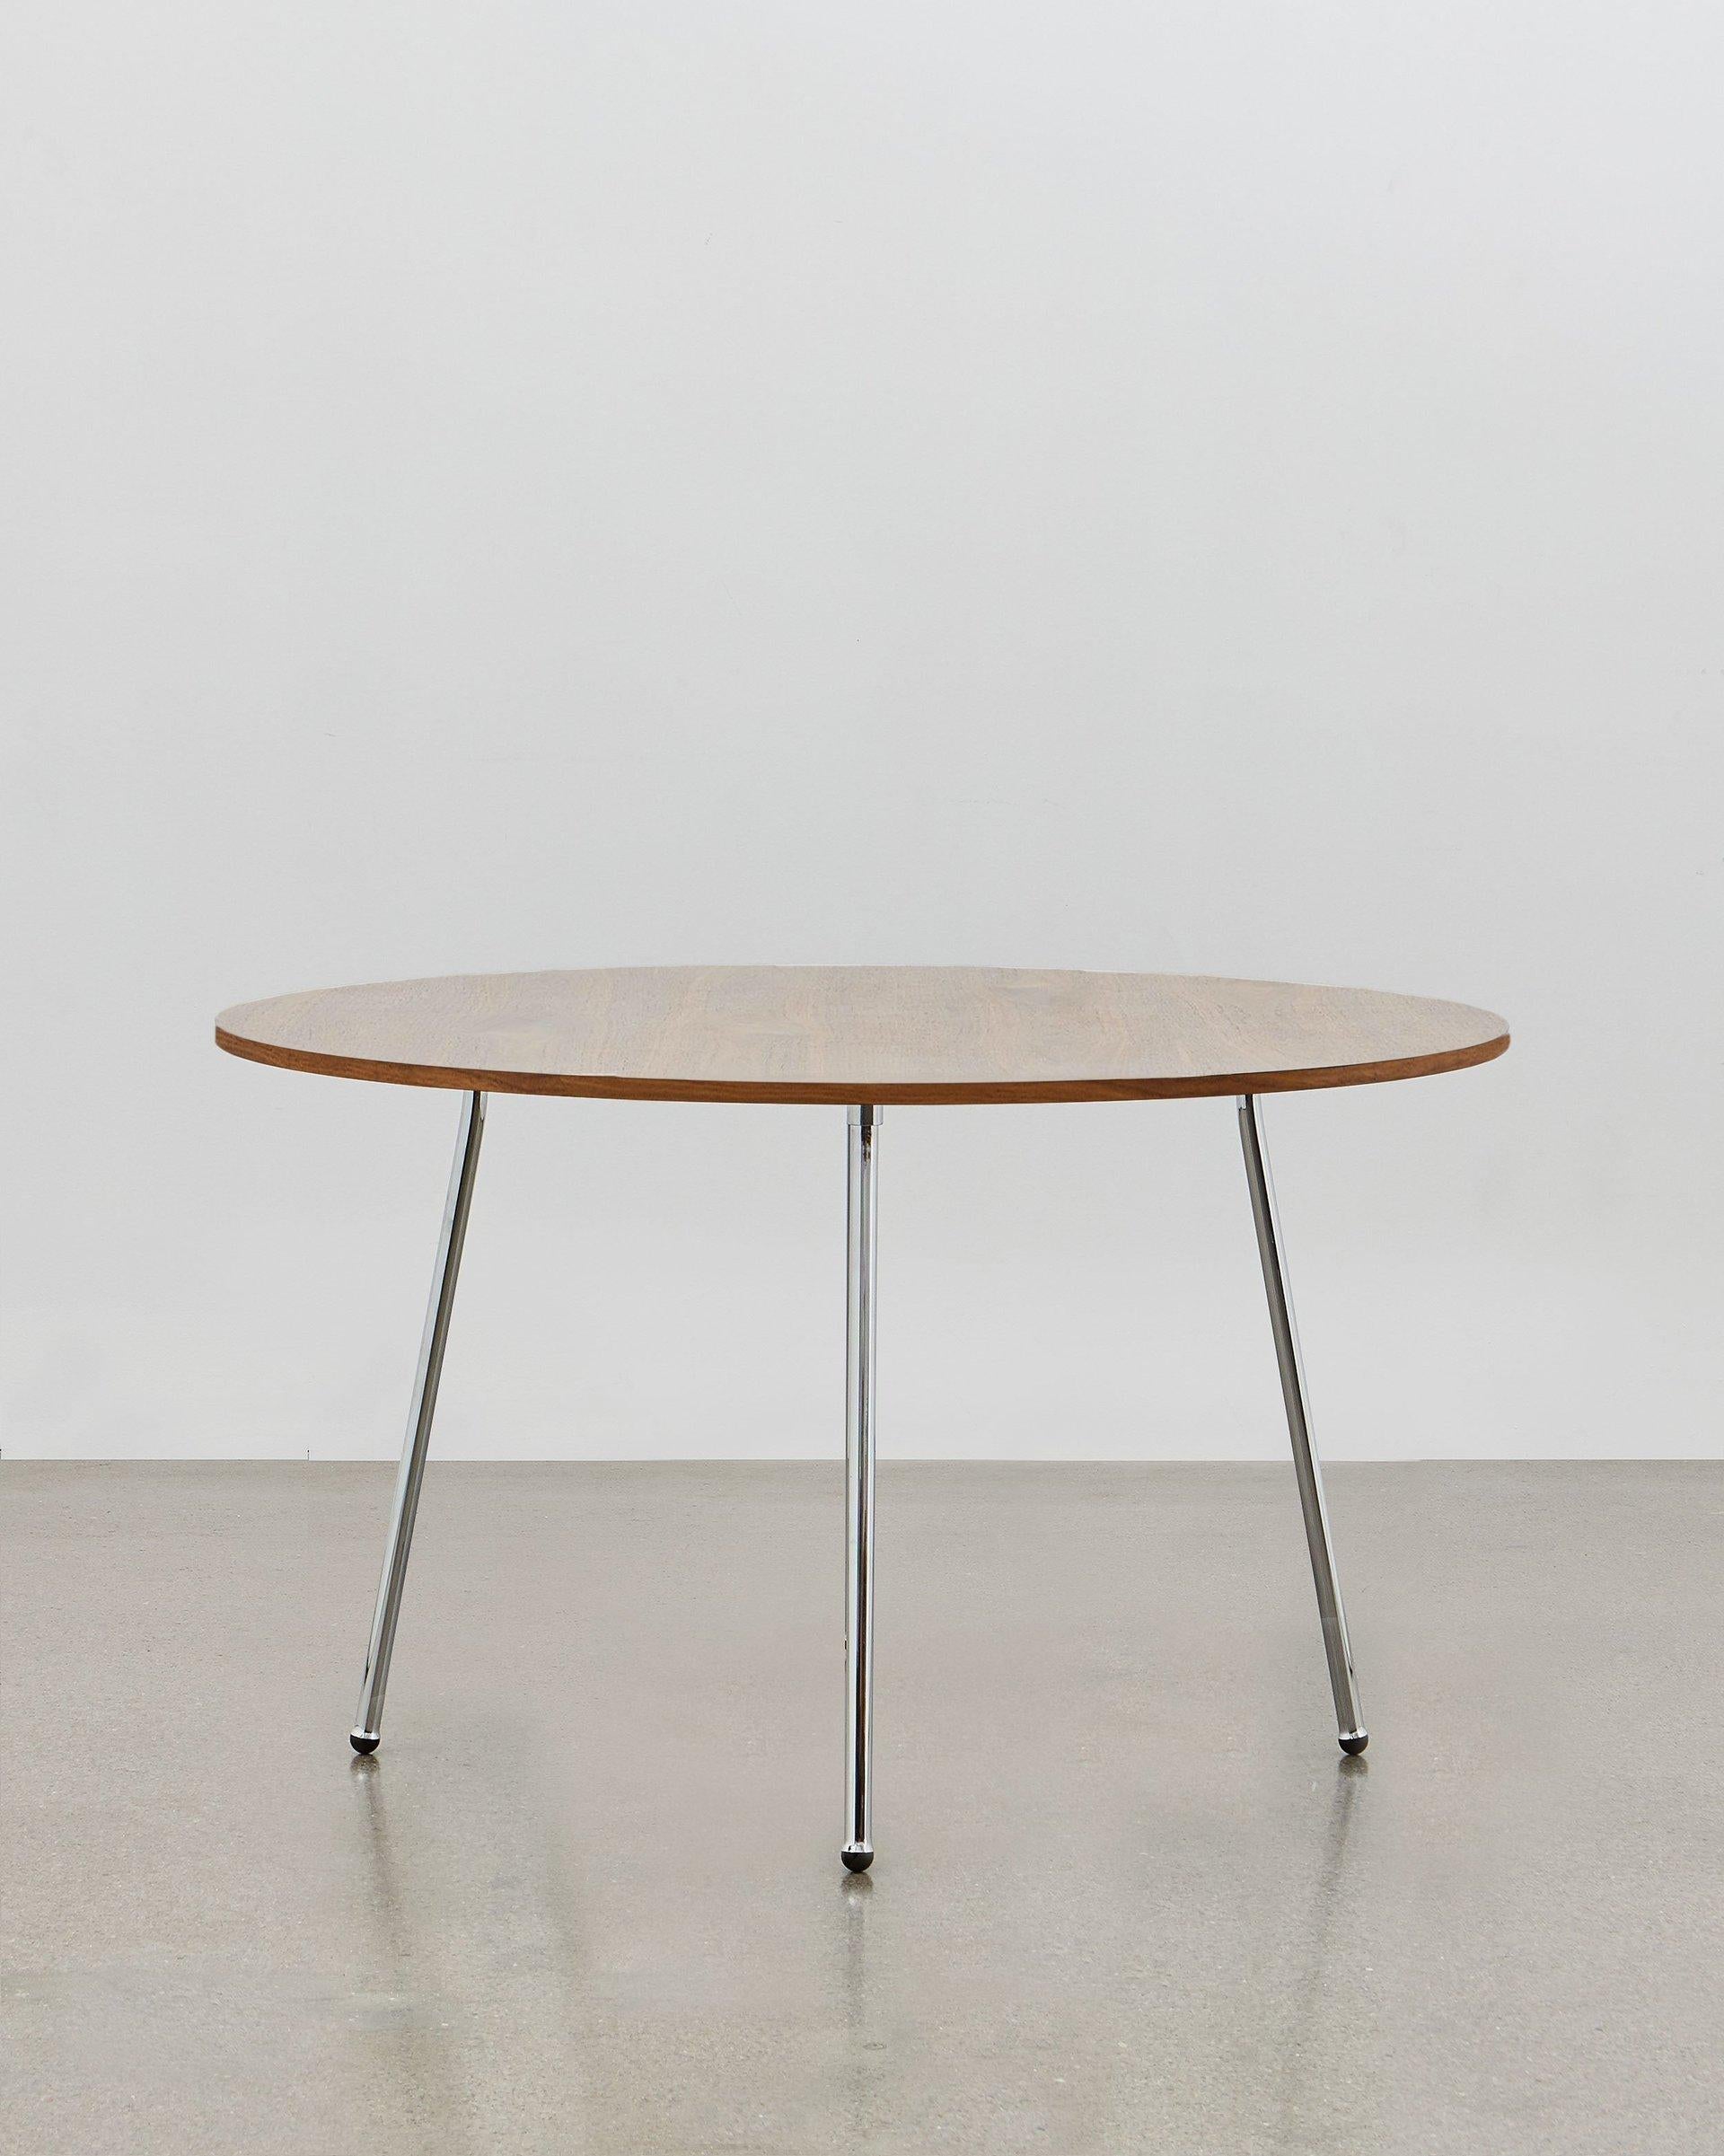 La table à manger PH a été conçue en 1937 ; elle est simple et élégante. La fonction rencontre la forme et l'aspect léger et distinctif de la table de salle à manger PH lui permet de s'adapter à tous les usages, à la maison, au travail ou dans une